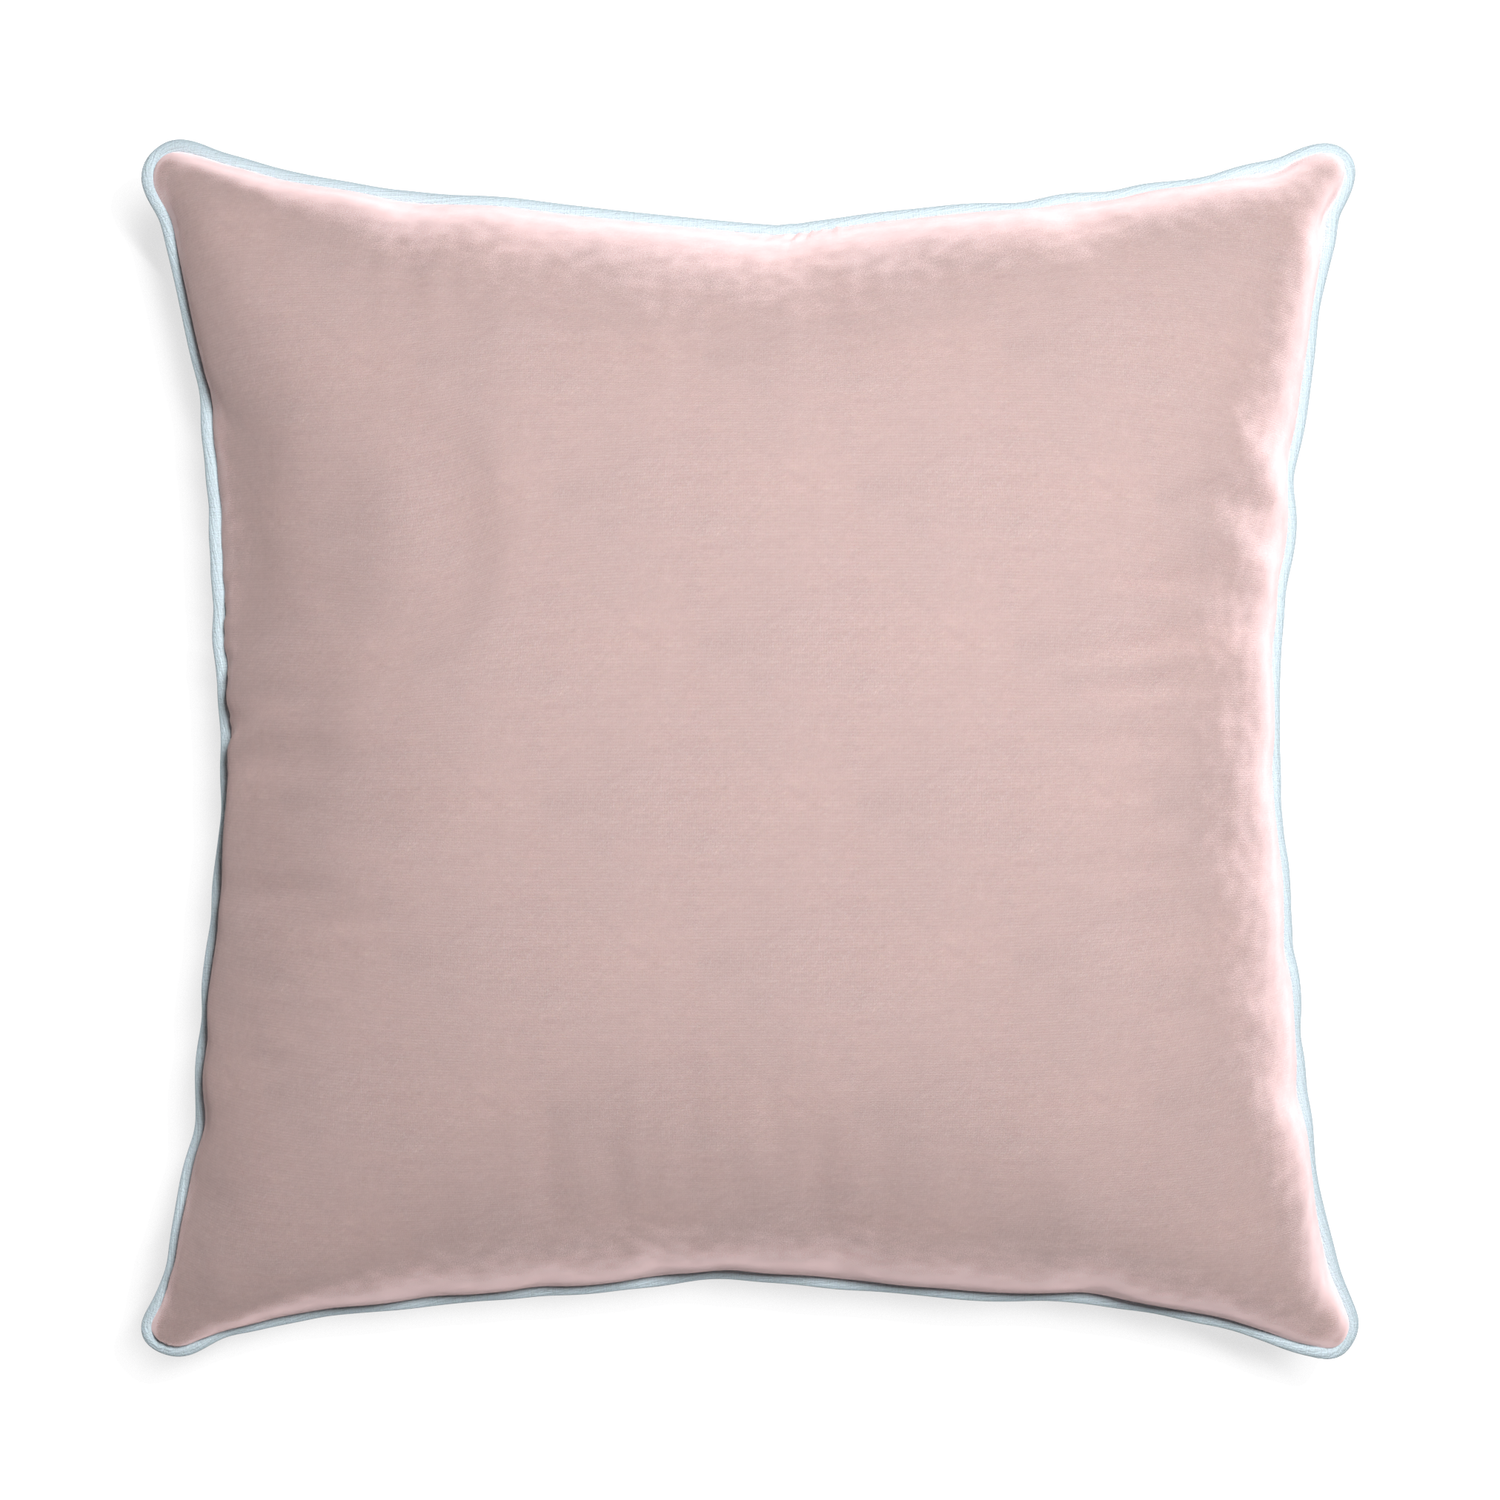 Euro-sham rose velvet custom pillow with powder piping on white background